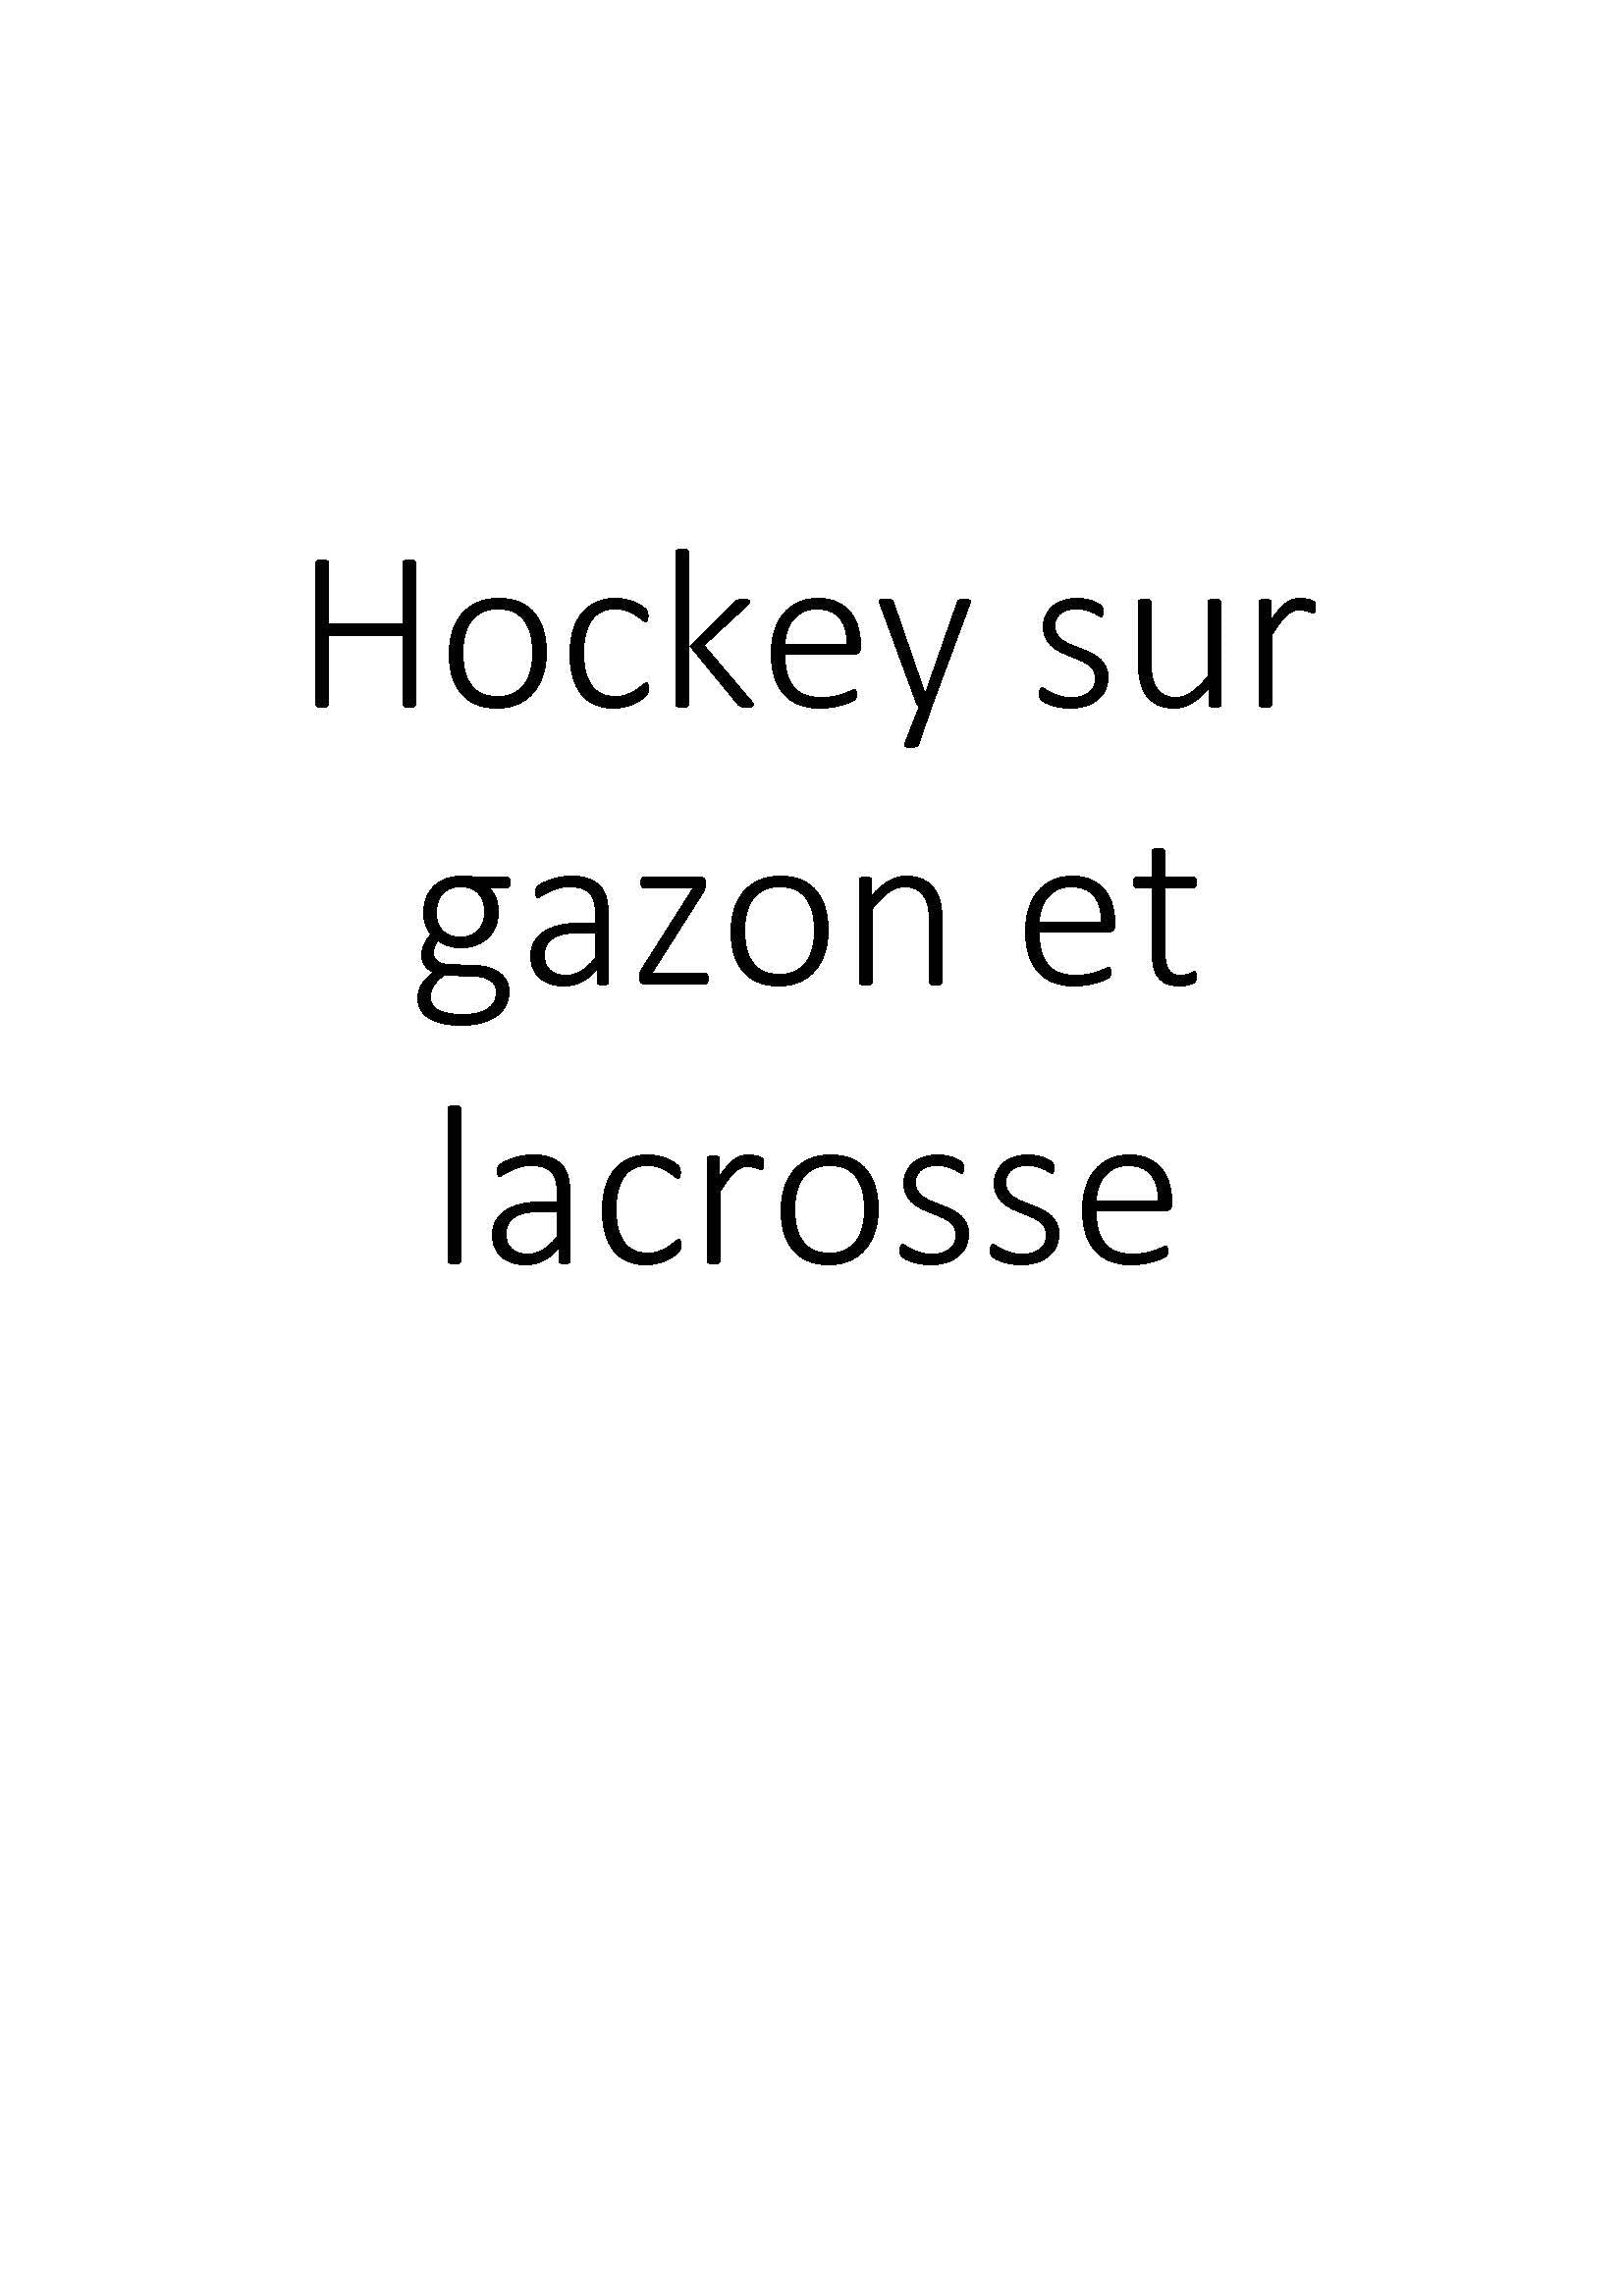 Hockey sur gazon et lacrosse clicktofournisseur.com